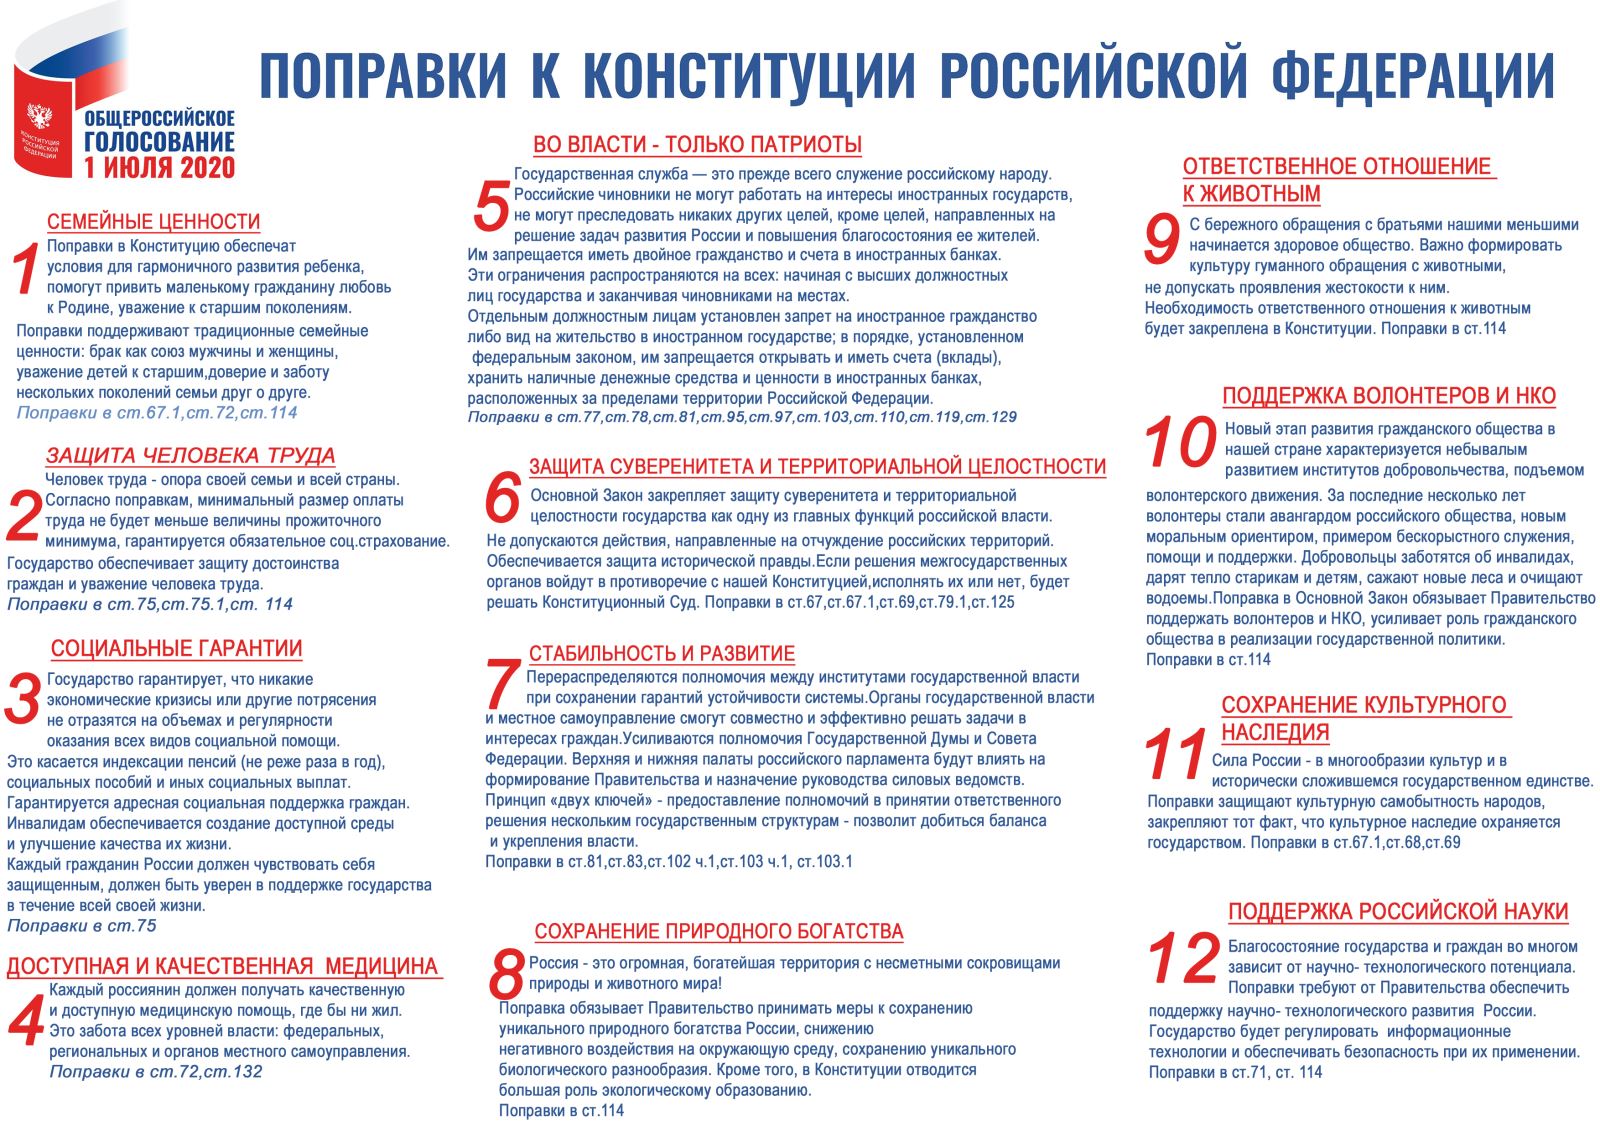 Последние поправки в Конституции РФ 2020